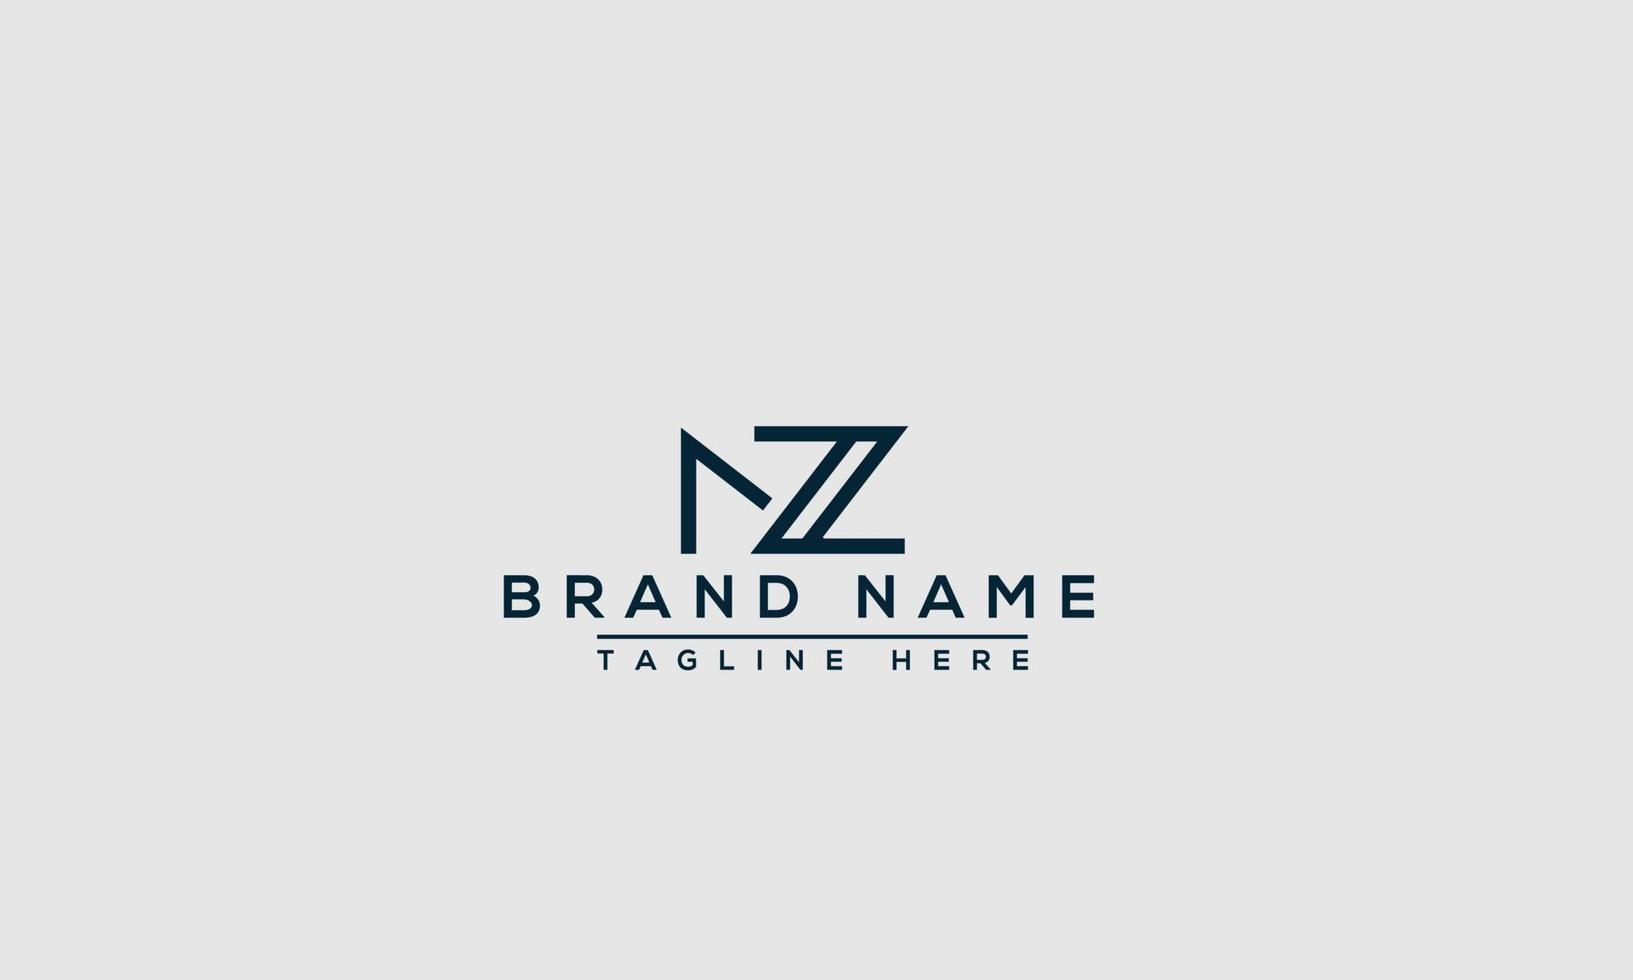 elemento de marca gráfico vectorial de plantilla de diseño de logotipo nz. vector